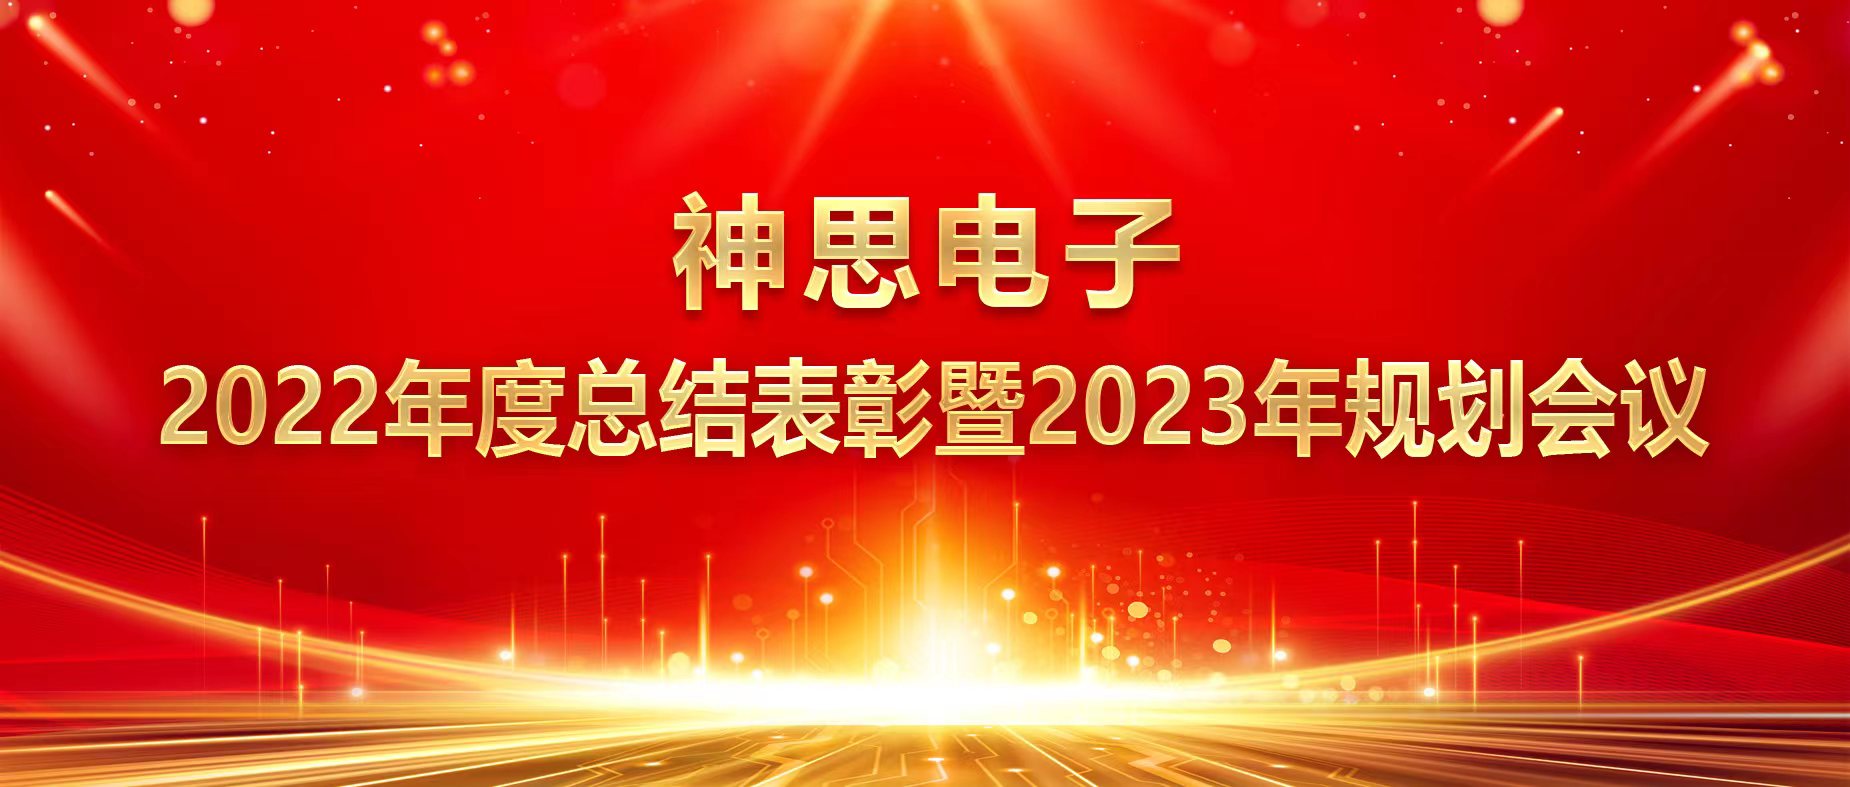 三十华章 聚力同行 接力奋斗 共谱新篇-神思电子2022年度总结表彰暨2023年度规划会议